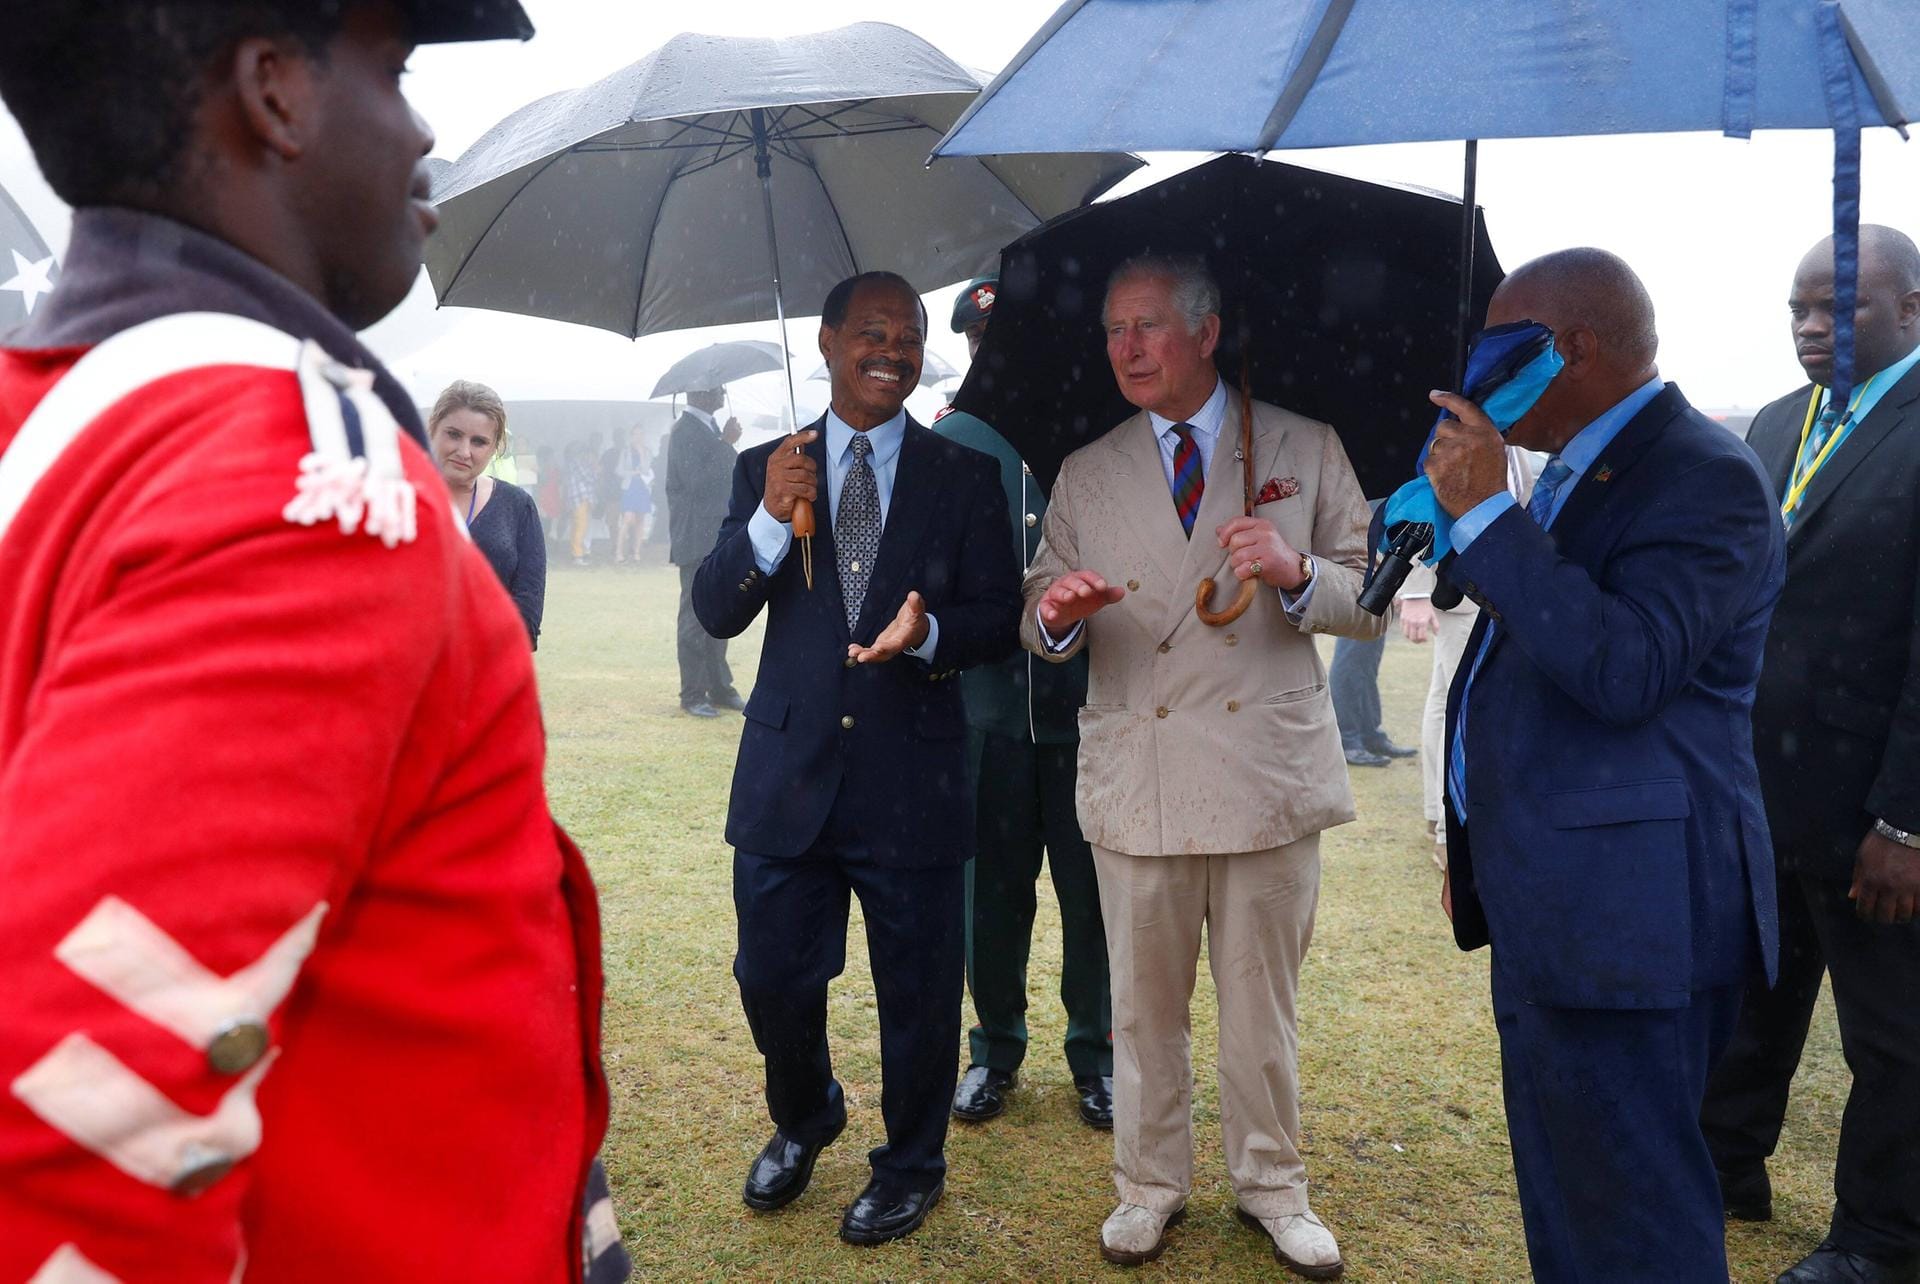 Auch in den Regen kamen Prinz Charles und seine Frau.